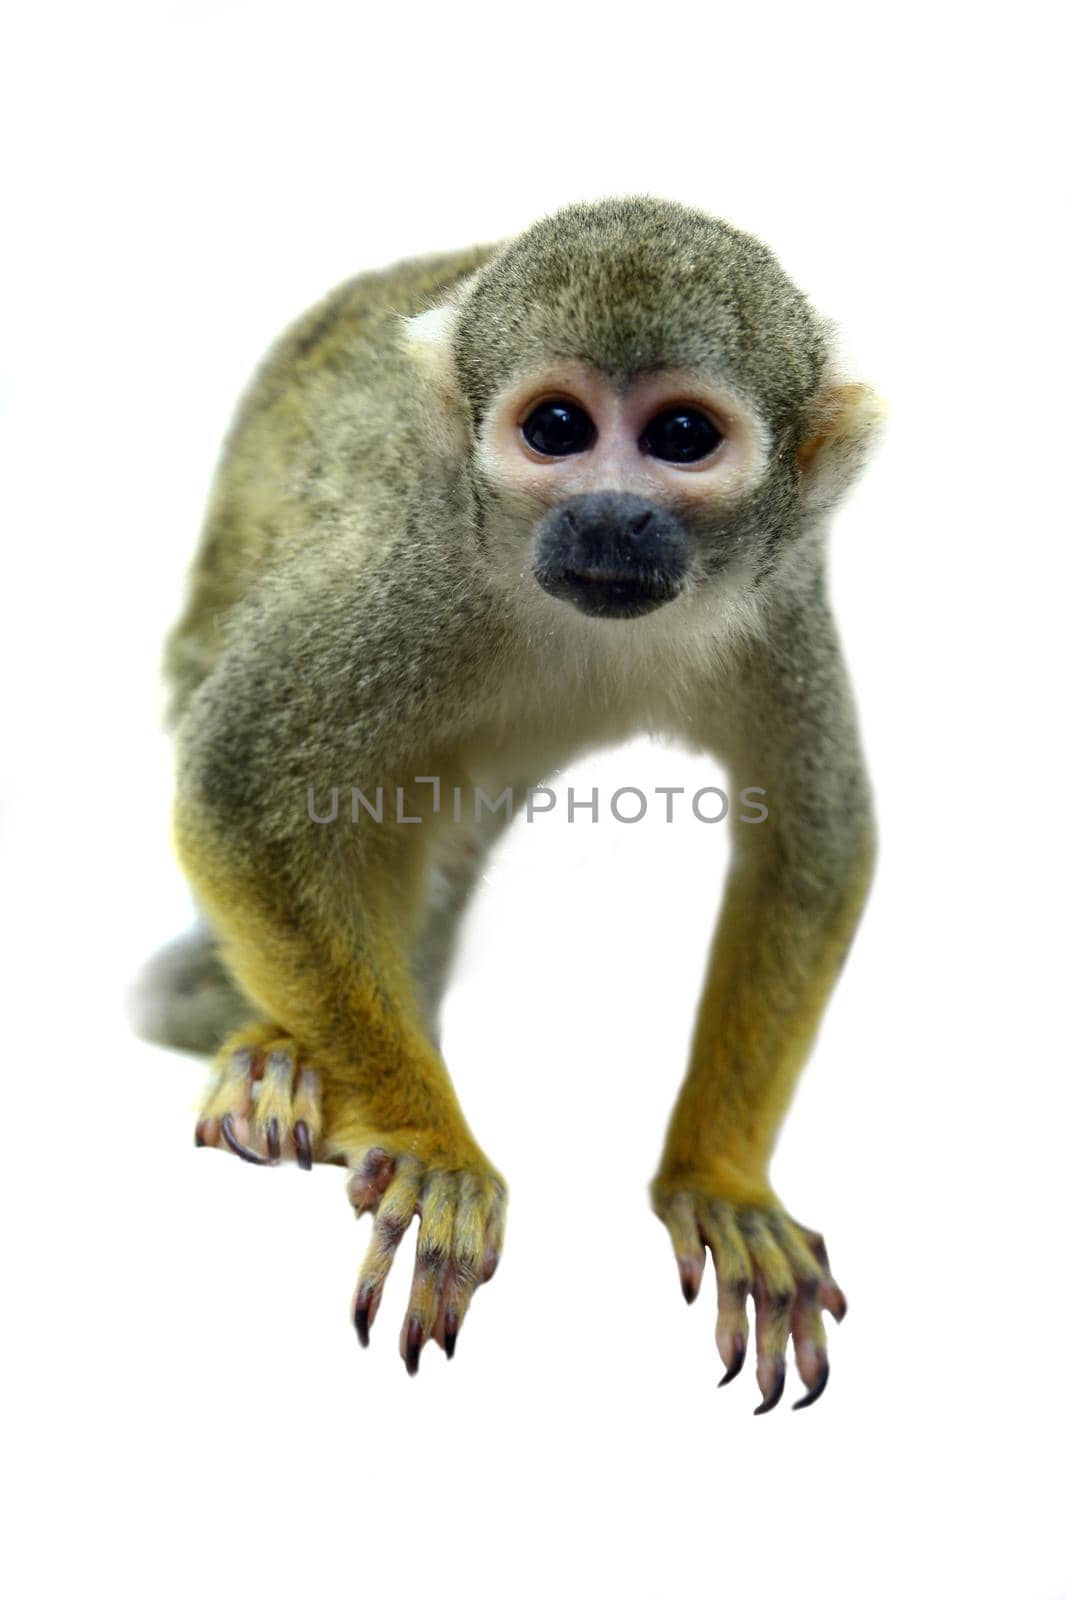 Common squirrel monkey, Saimiri sciureus, on white background